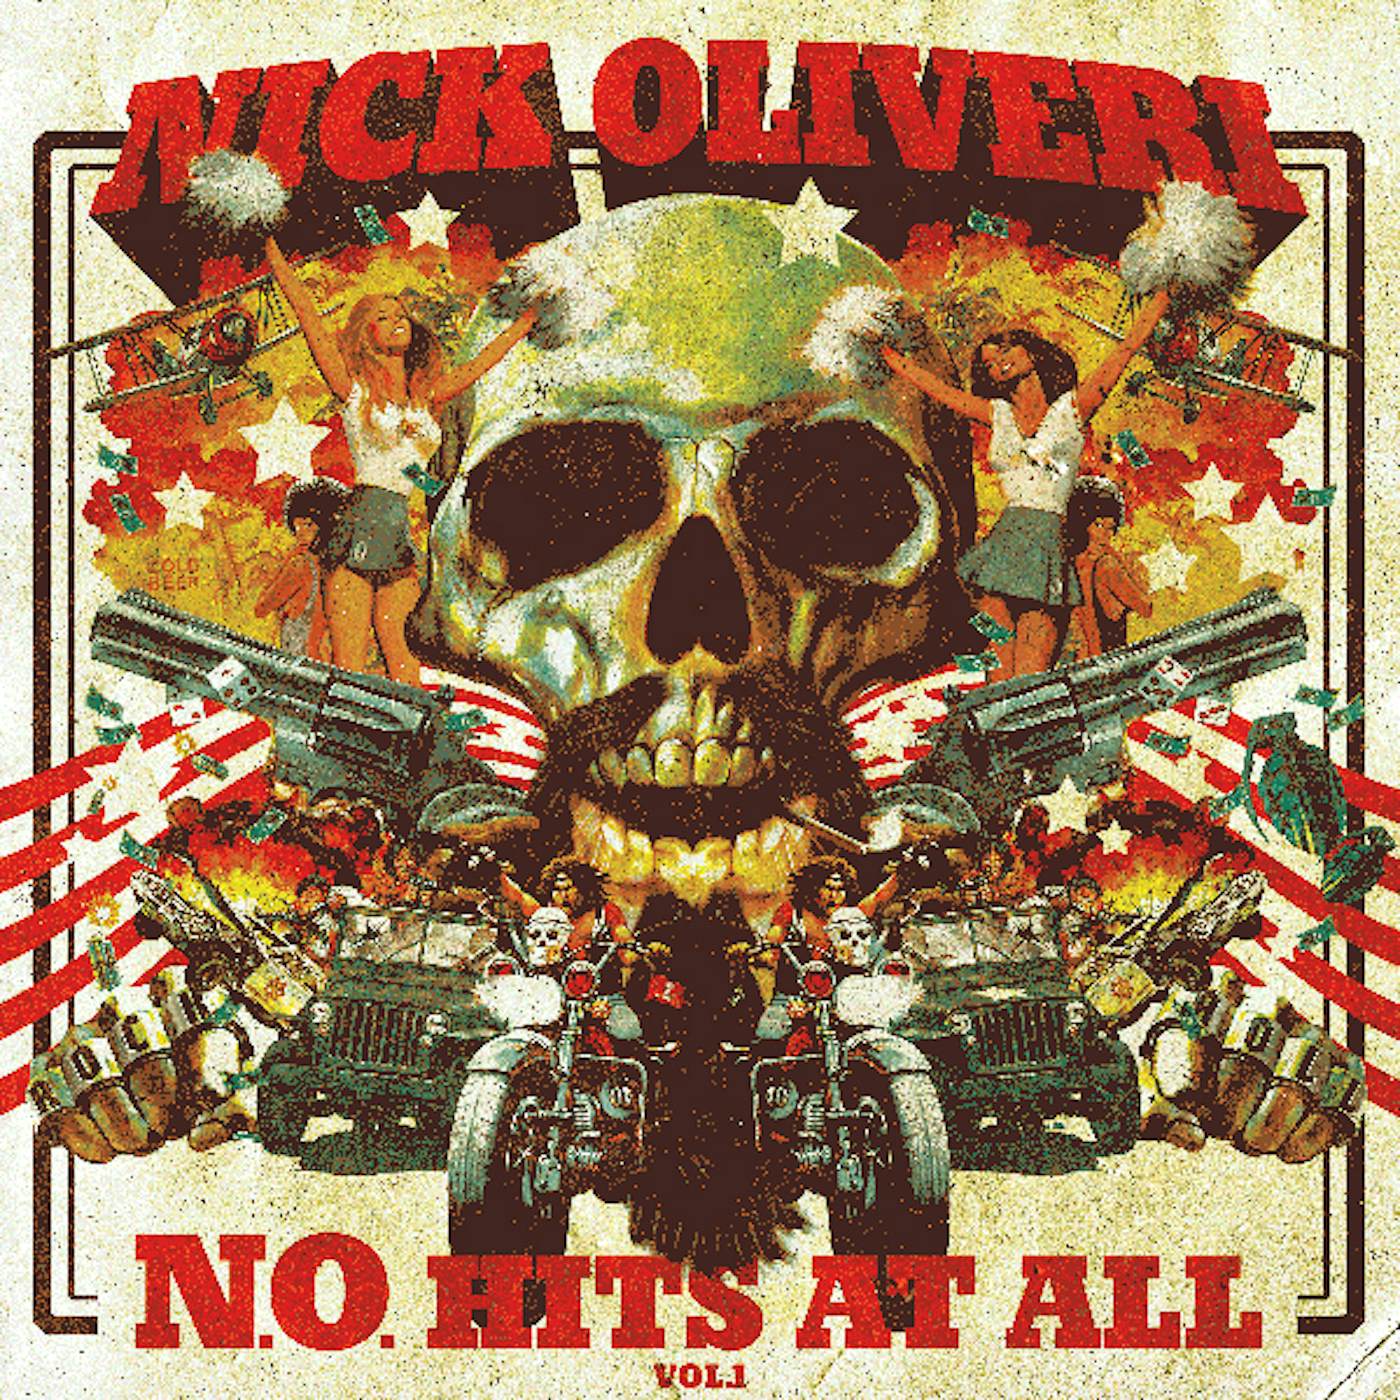 Nick Oliveri N.O. HITS AT ALL 1 Vinyl Record